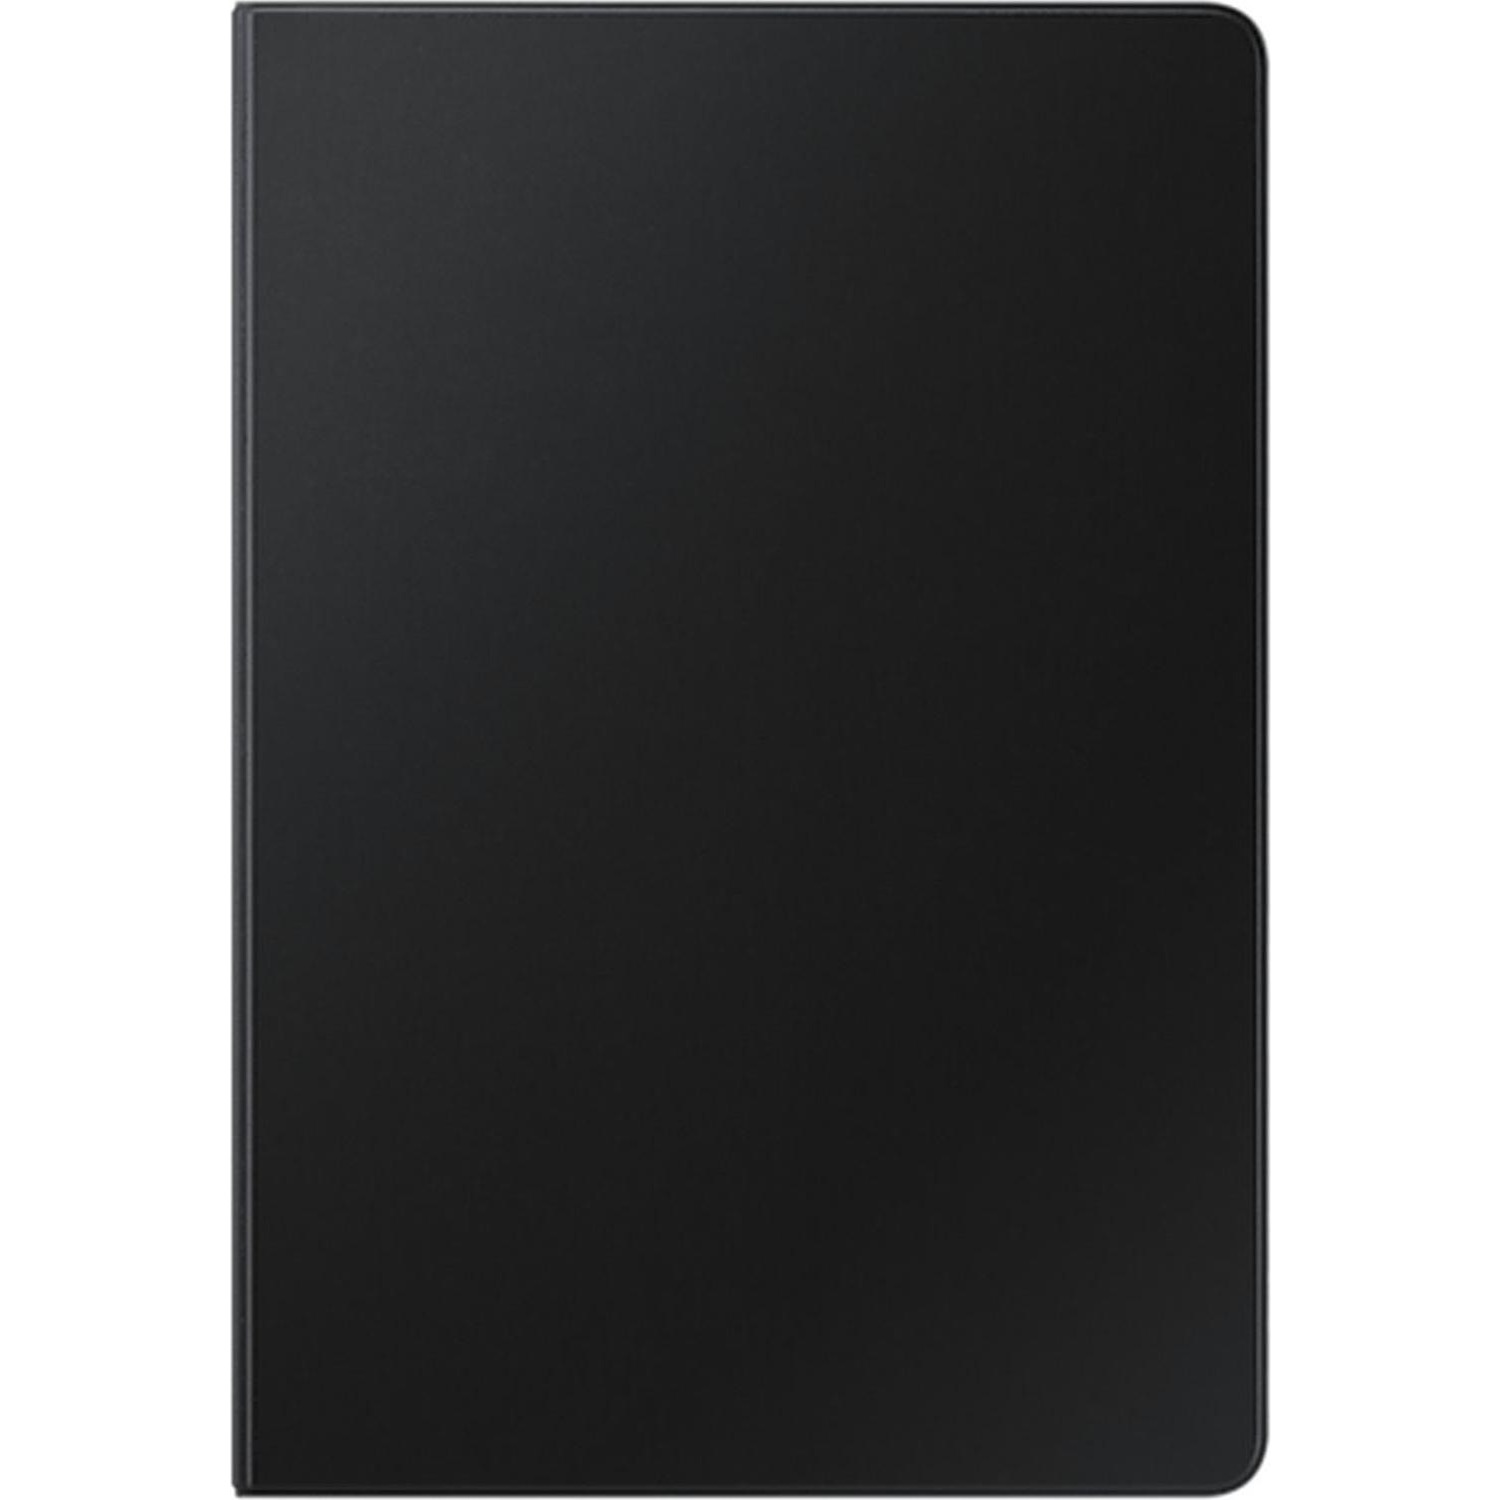 Immagine per Book cover Samsung per Tablet S8/S7 nera da DIMOStore